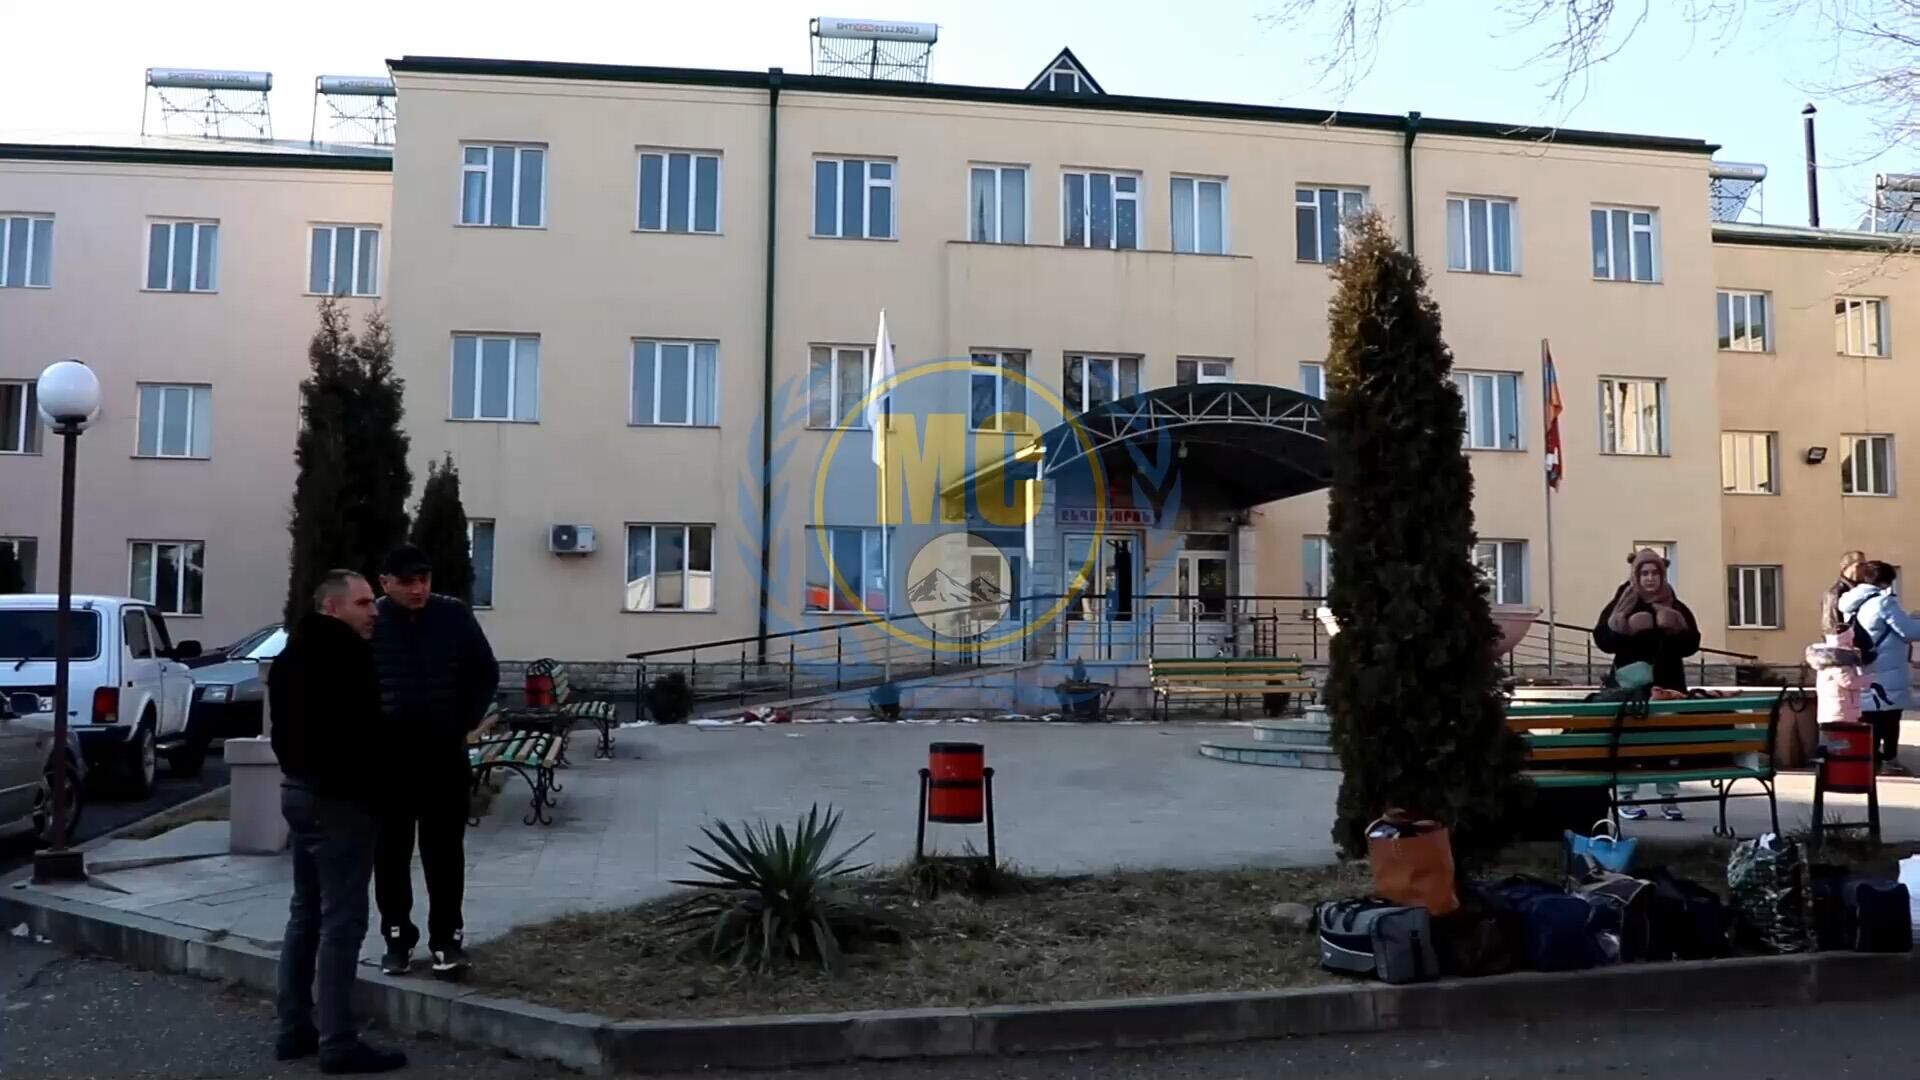 Լեռնային Ղարաբաղից տարհանվել է ՌԴ 44 քաղաքացի, այդ թվում՝ երեխաներ (տեսանյութ)